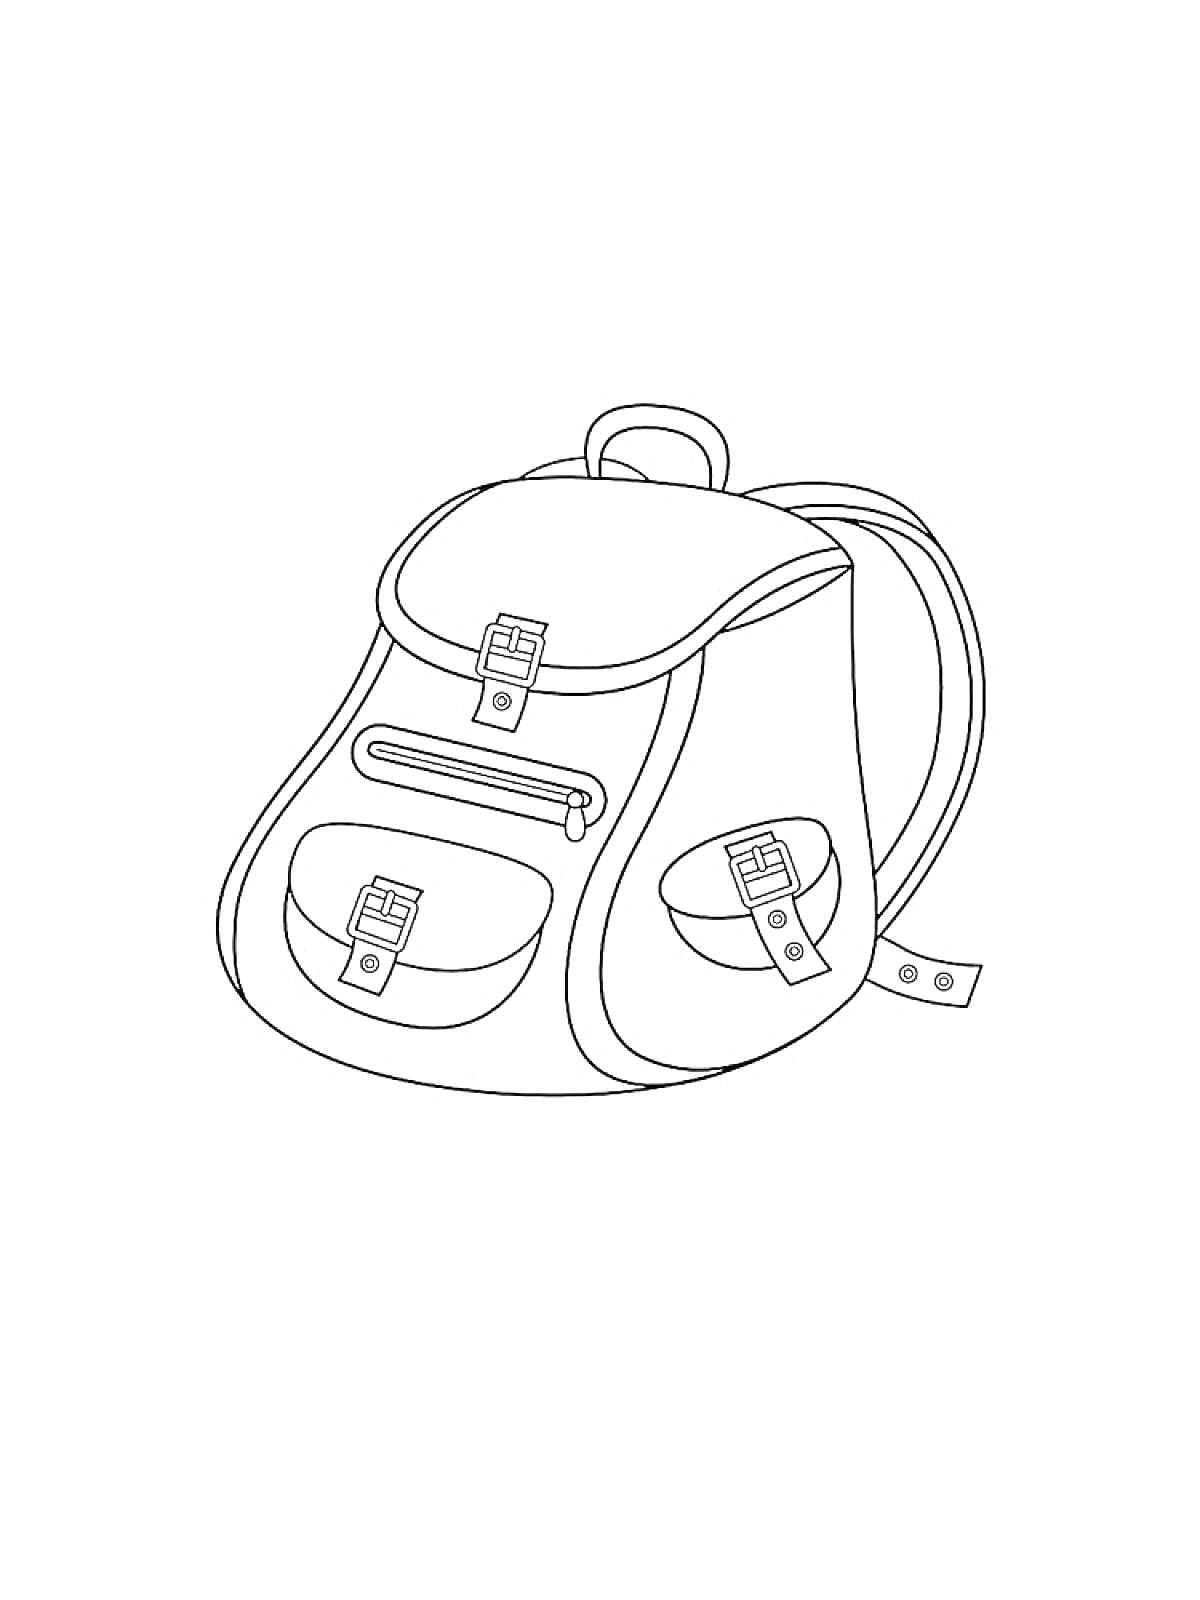 Раскраска Портфель с двумя передними карманами на застежках и верхним клапаном на застежке